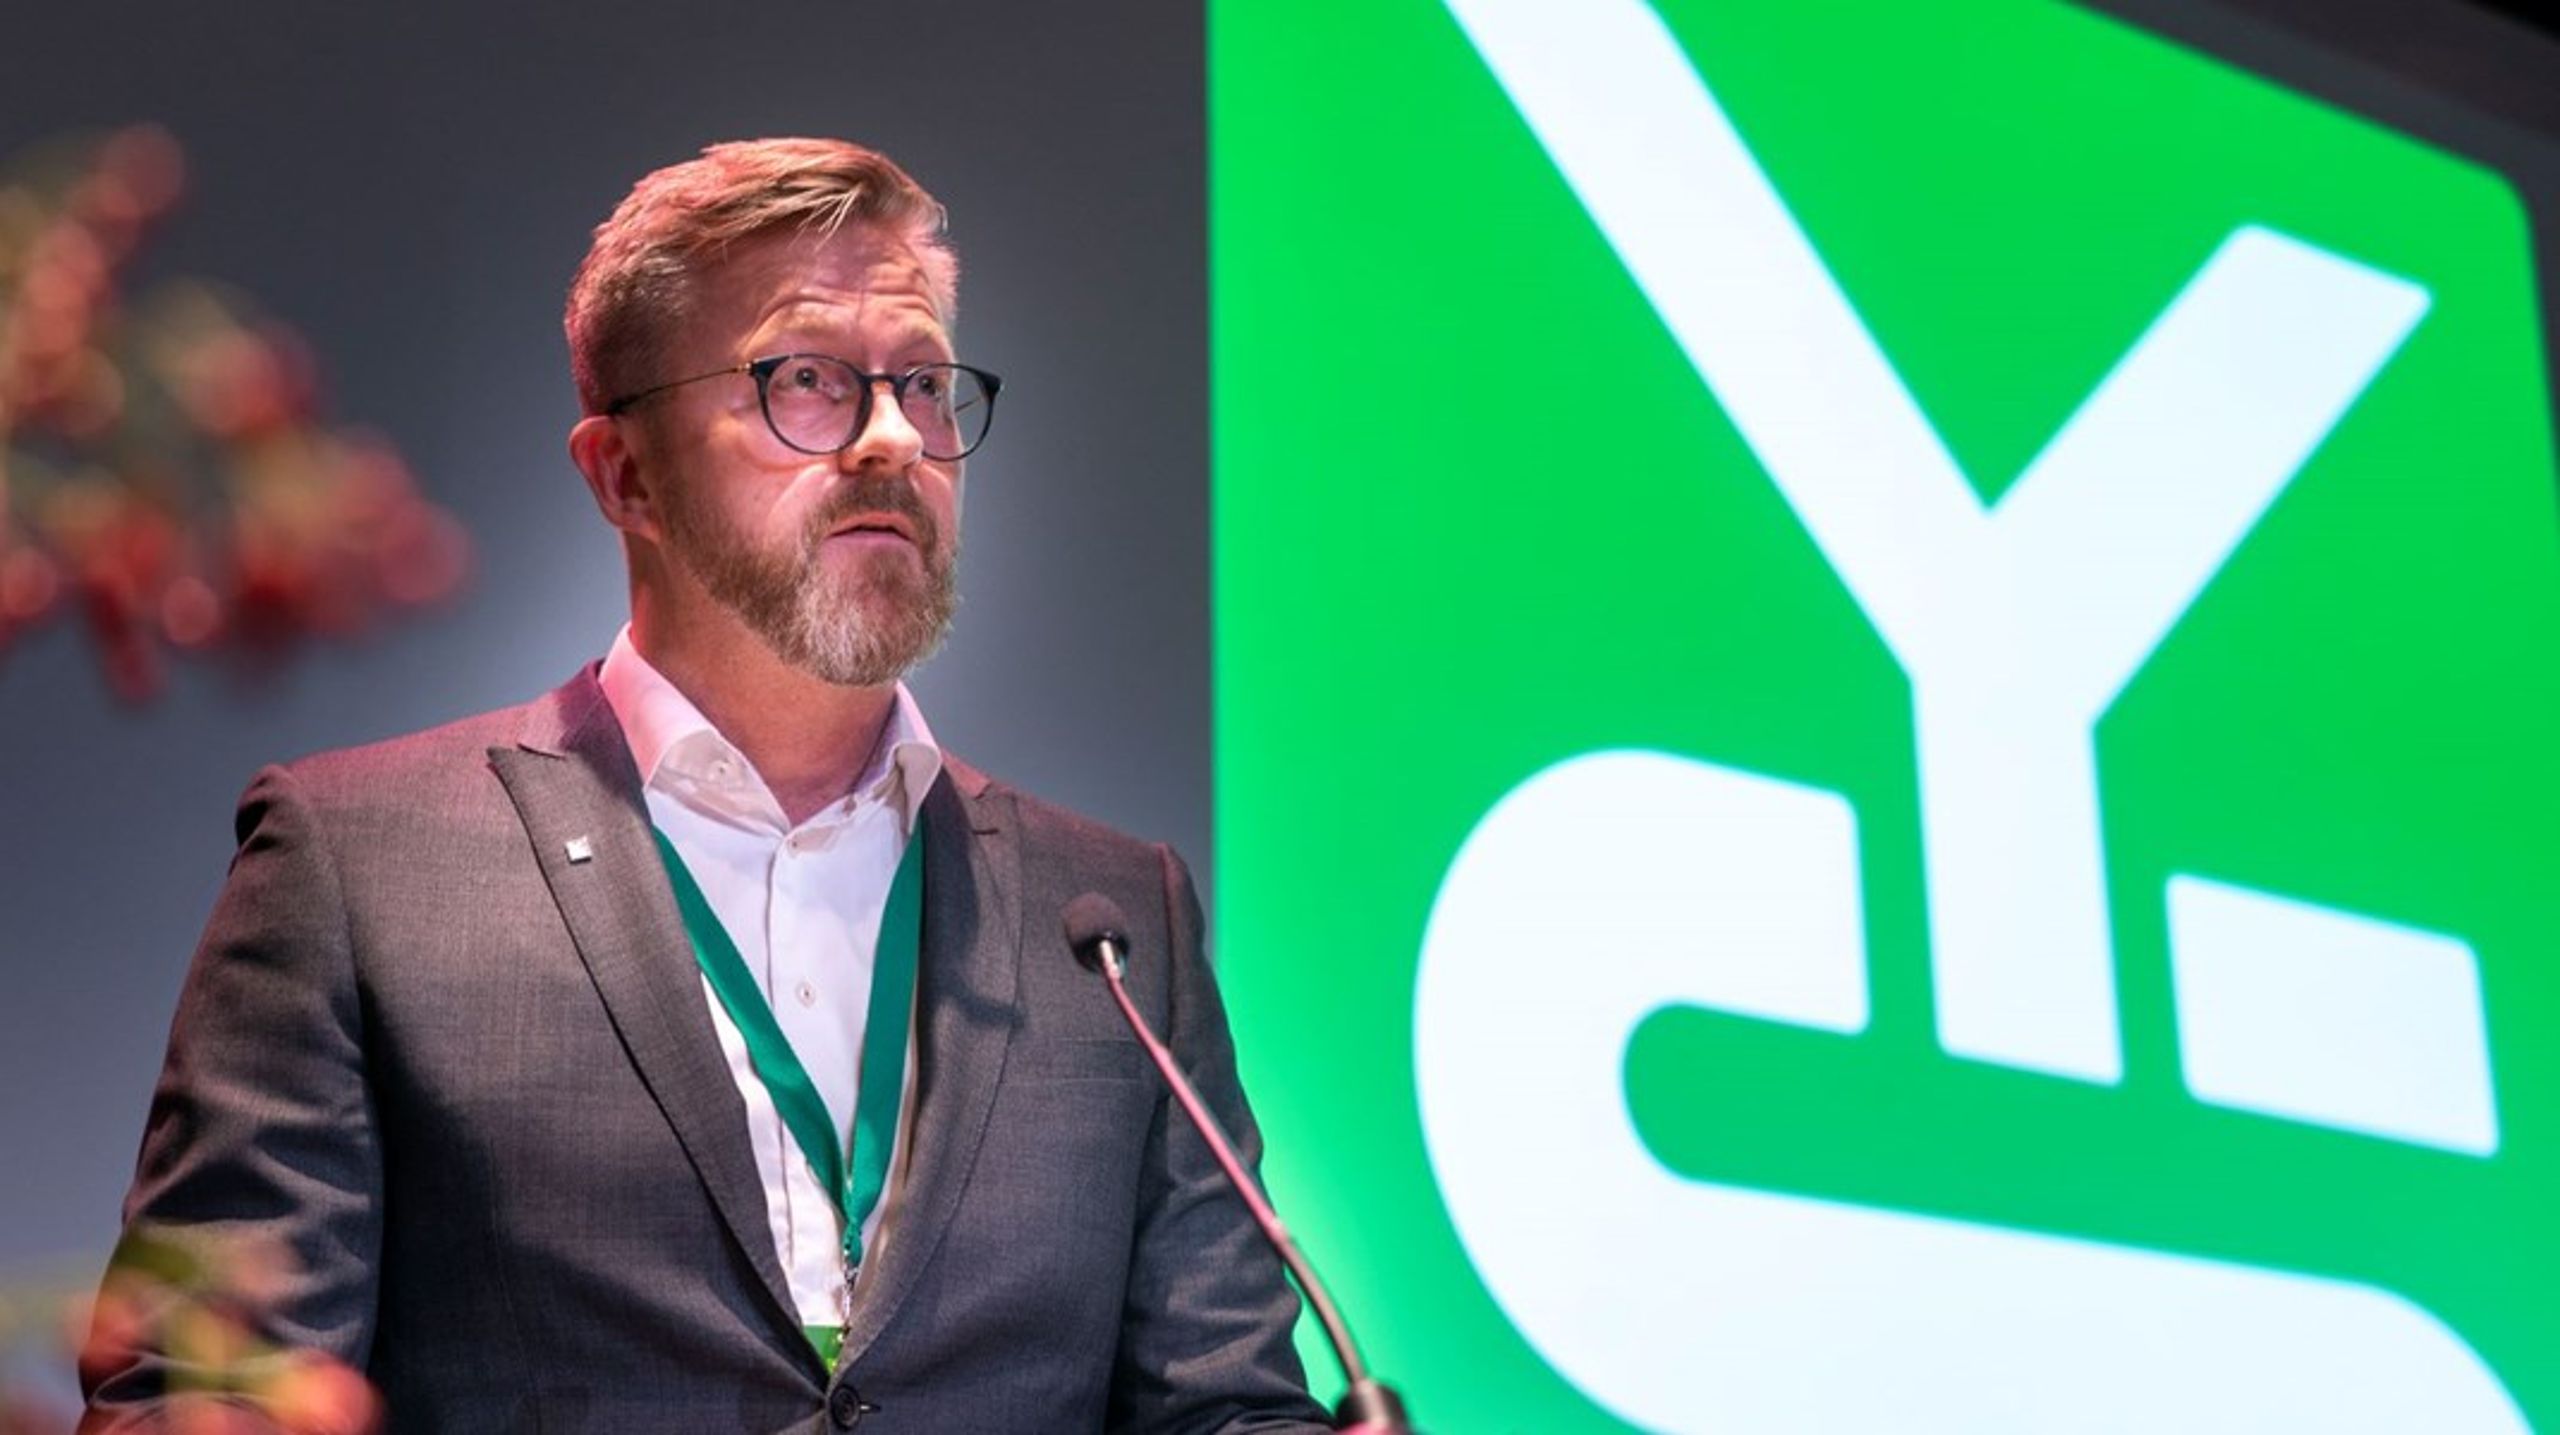 YS-leder Hans Erik Skjæggerud mener at de har gjort det de kan for å imøtekomme Finansforbundets interesser. Han håper forbundet vil bruke det kommende året til å vurdere om de virkelig ønsker å gjennomføre utmeldingen.